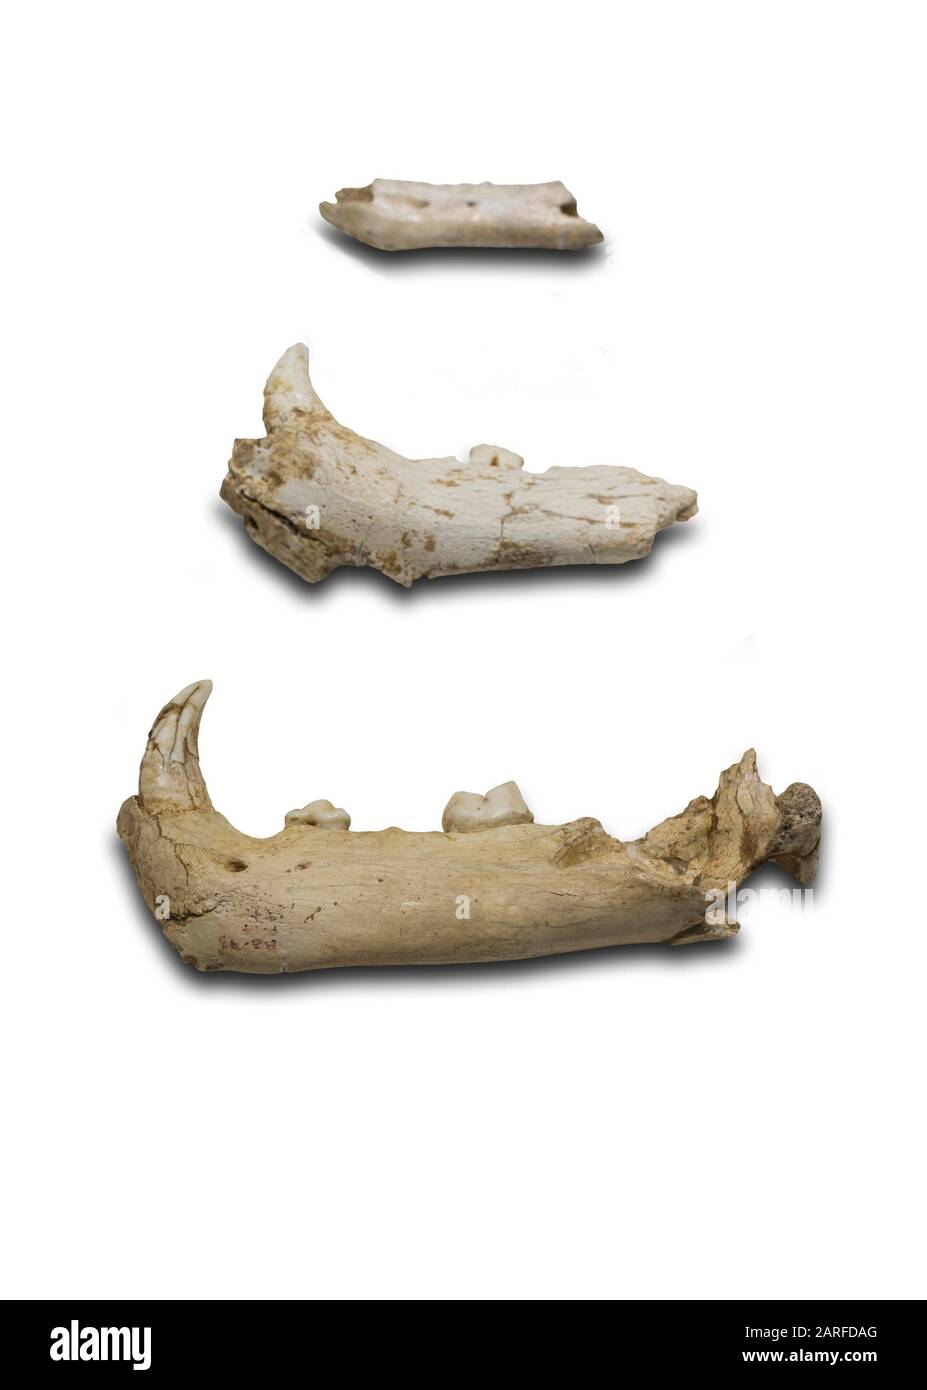 Malaga, Spagna - Settembre 21th, 2018: Fauna Della Grotta Di Zafarraya. Iena, Dhole, orso bruno e ossa del leone della caverna. Museo Di Malaga, Spagna. Foto Stock